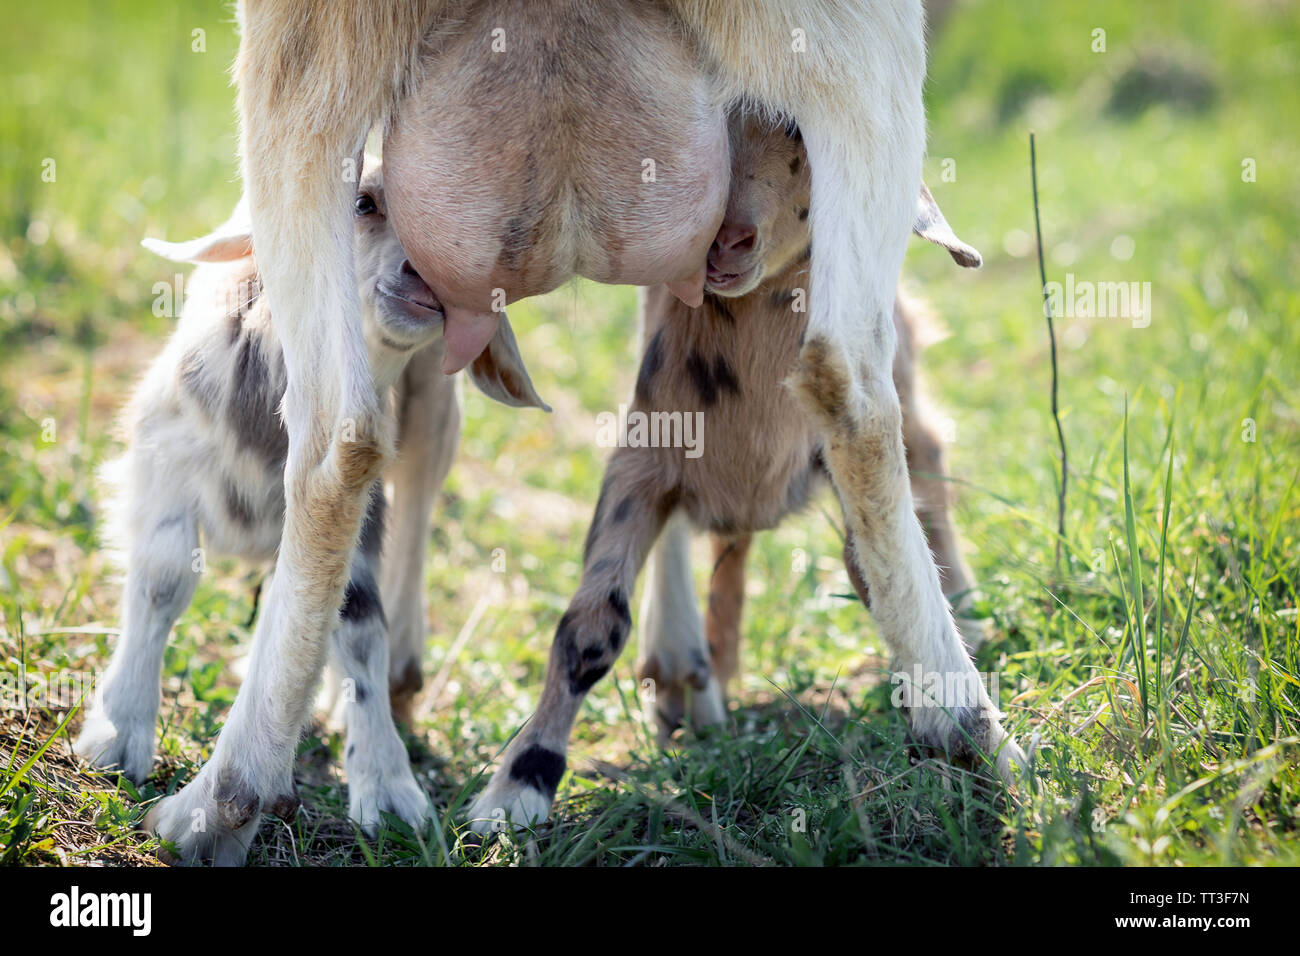 Zwei kleine Ziege goatlings, Saugen, trinken Milch von der Mutter Zitze, es ist der Pflege von seiner Mutter. Baby goat Kid nahezu voll Euter von m Stockfoto